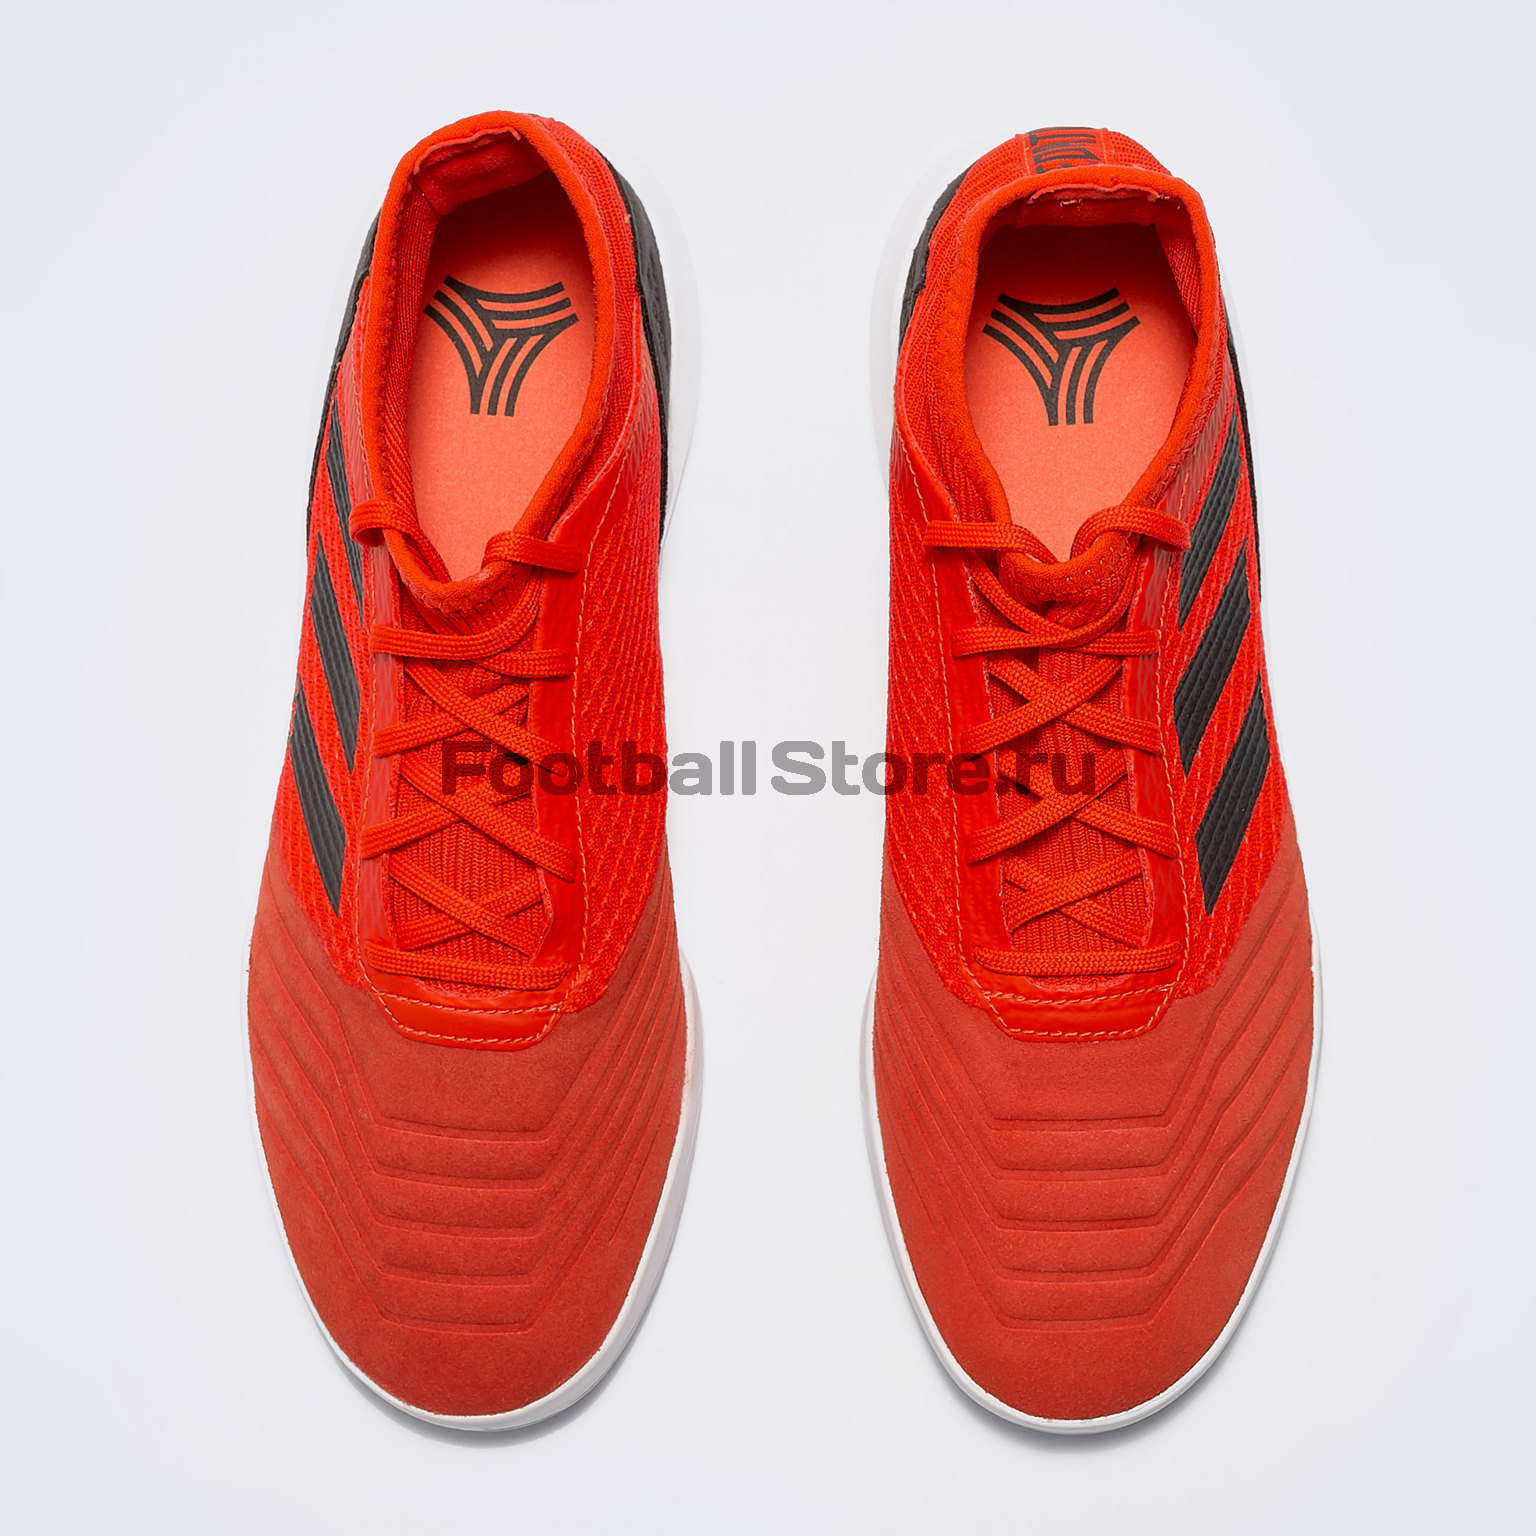 Футбольная обувь Adidas Predator 19.3 TR D97969